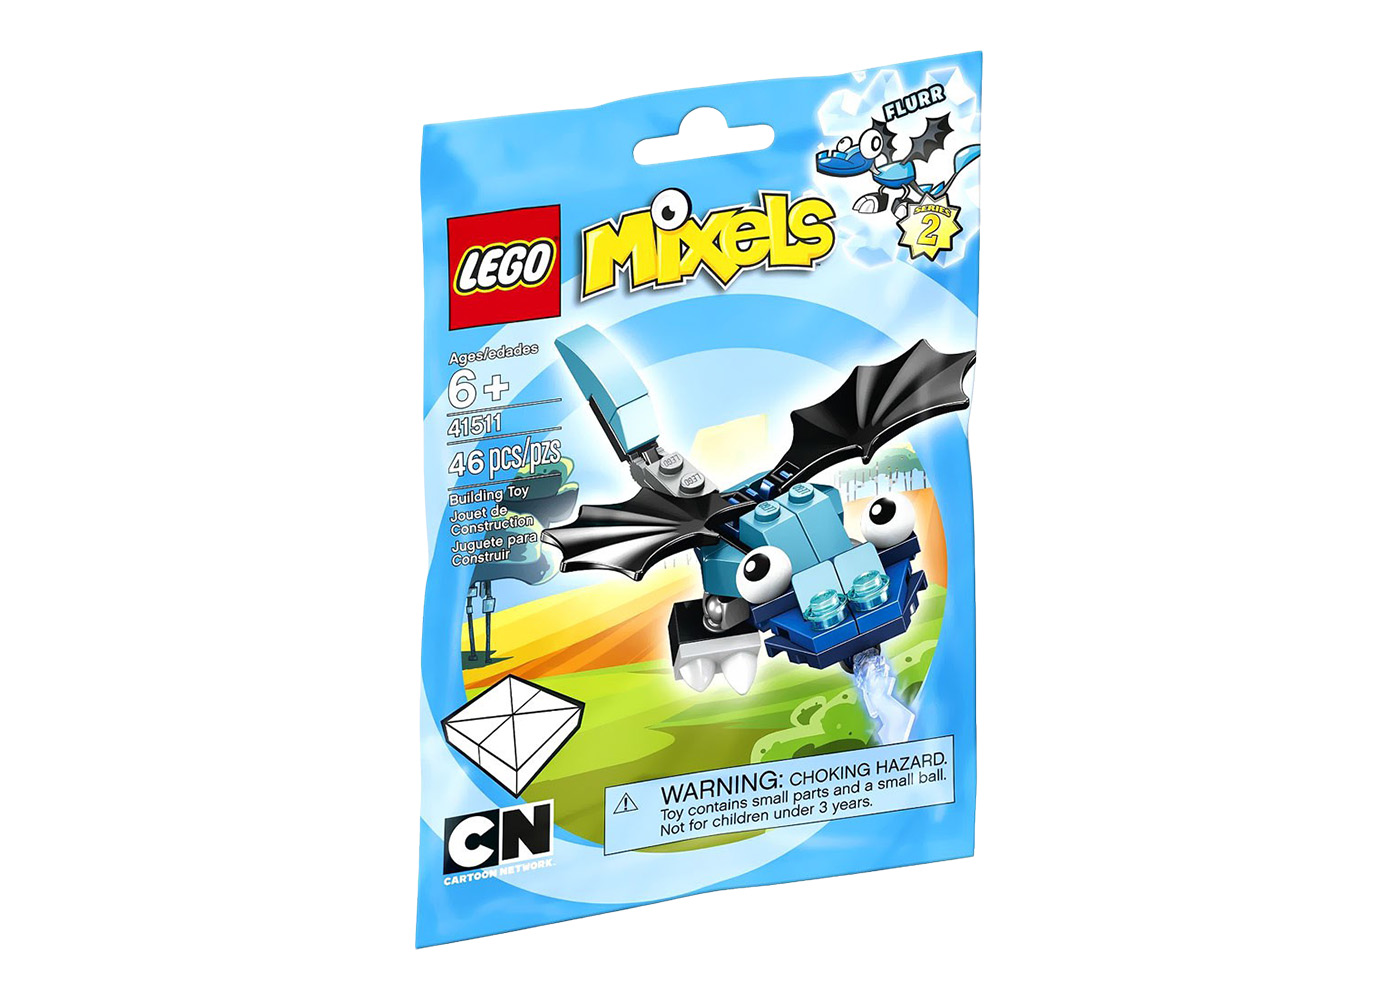 LEGO Mixels Series 2 Flurr Set #41511 